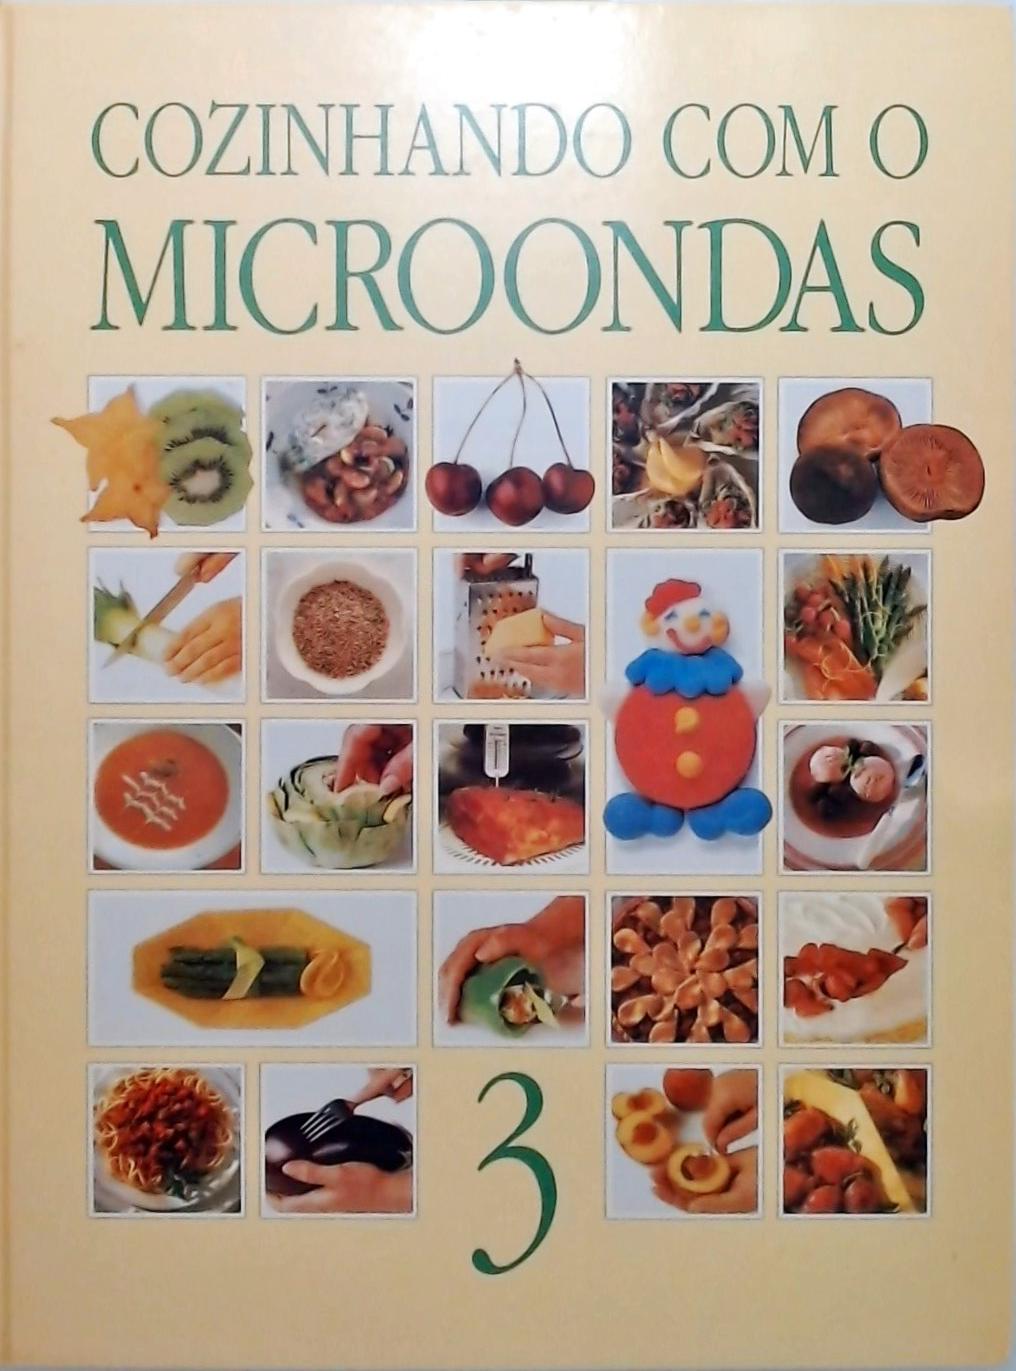 Cozinhando com o Microondas - Volume 3